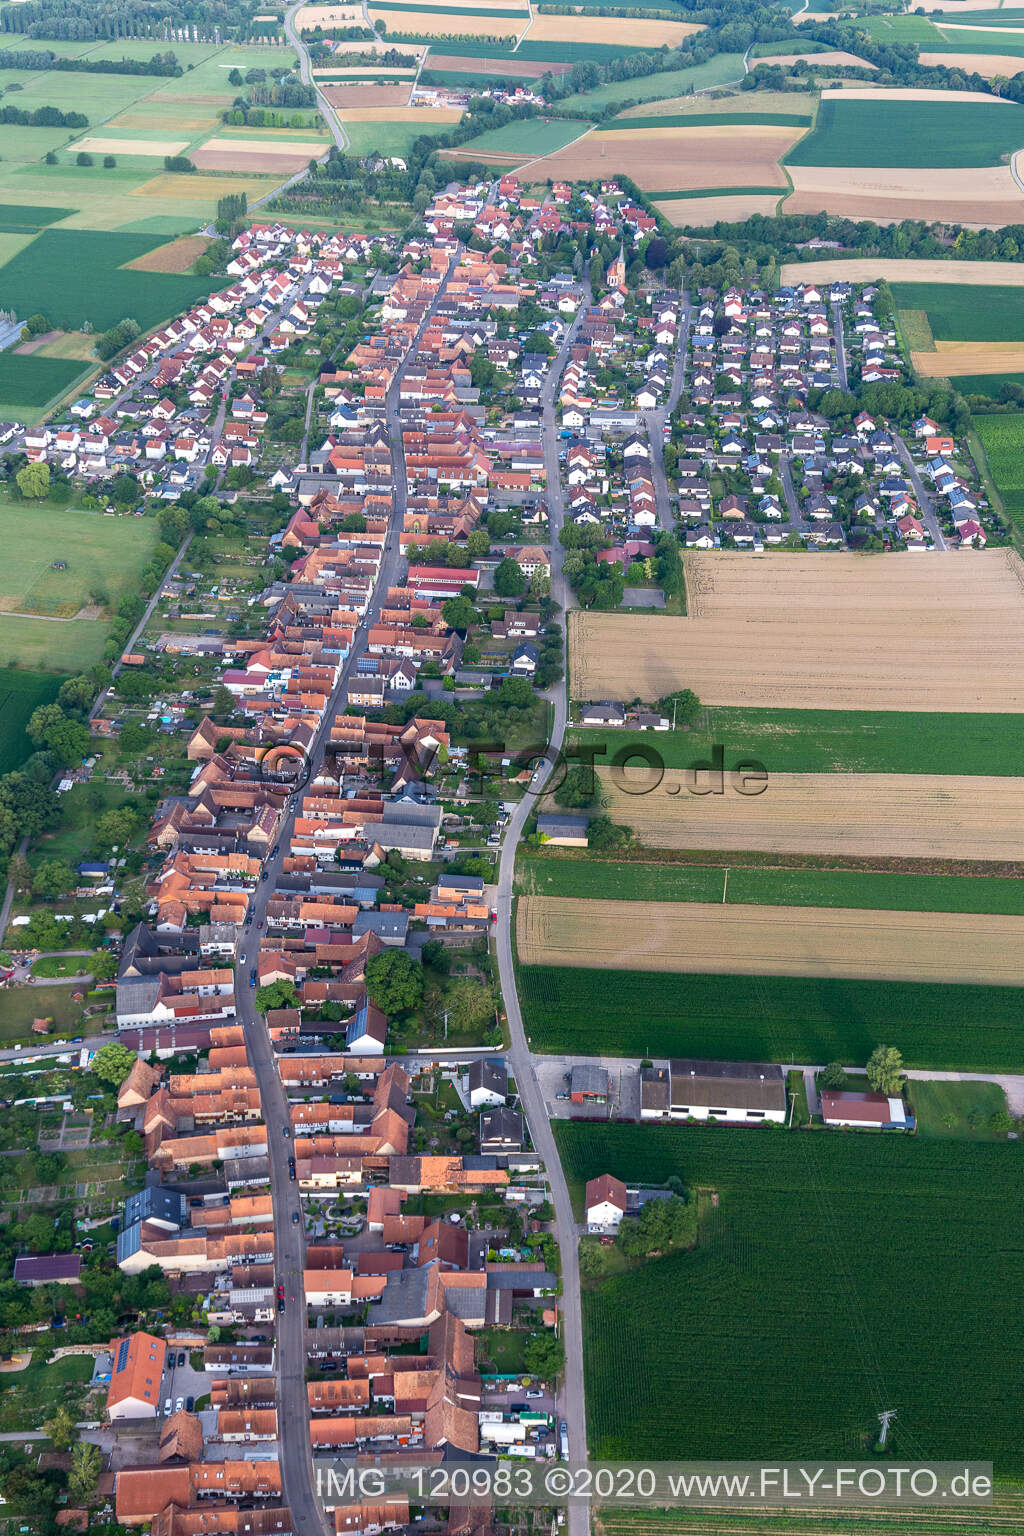 Vue oblique de Freckenfeld dans le département Rhénanie-Palatinat, Allemagne